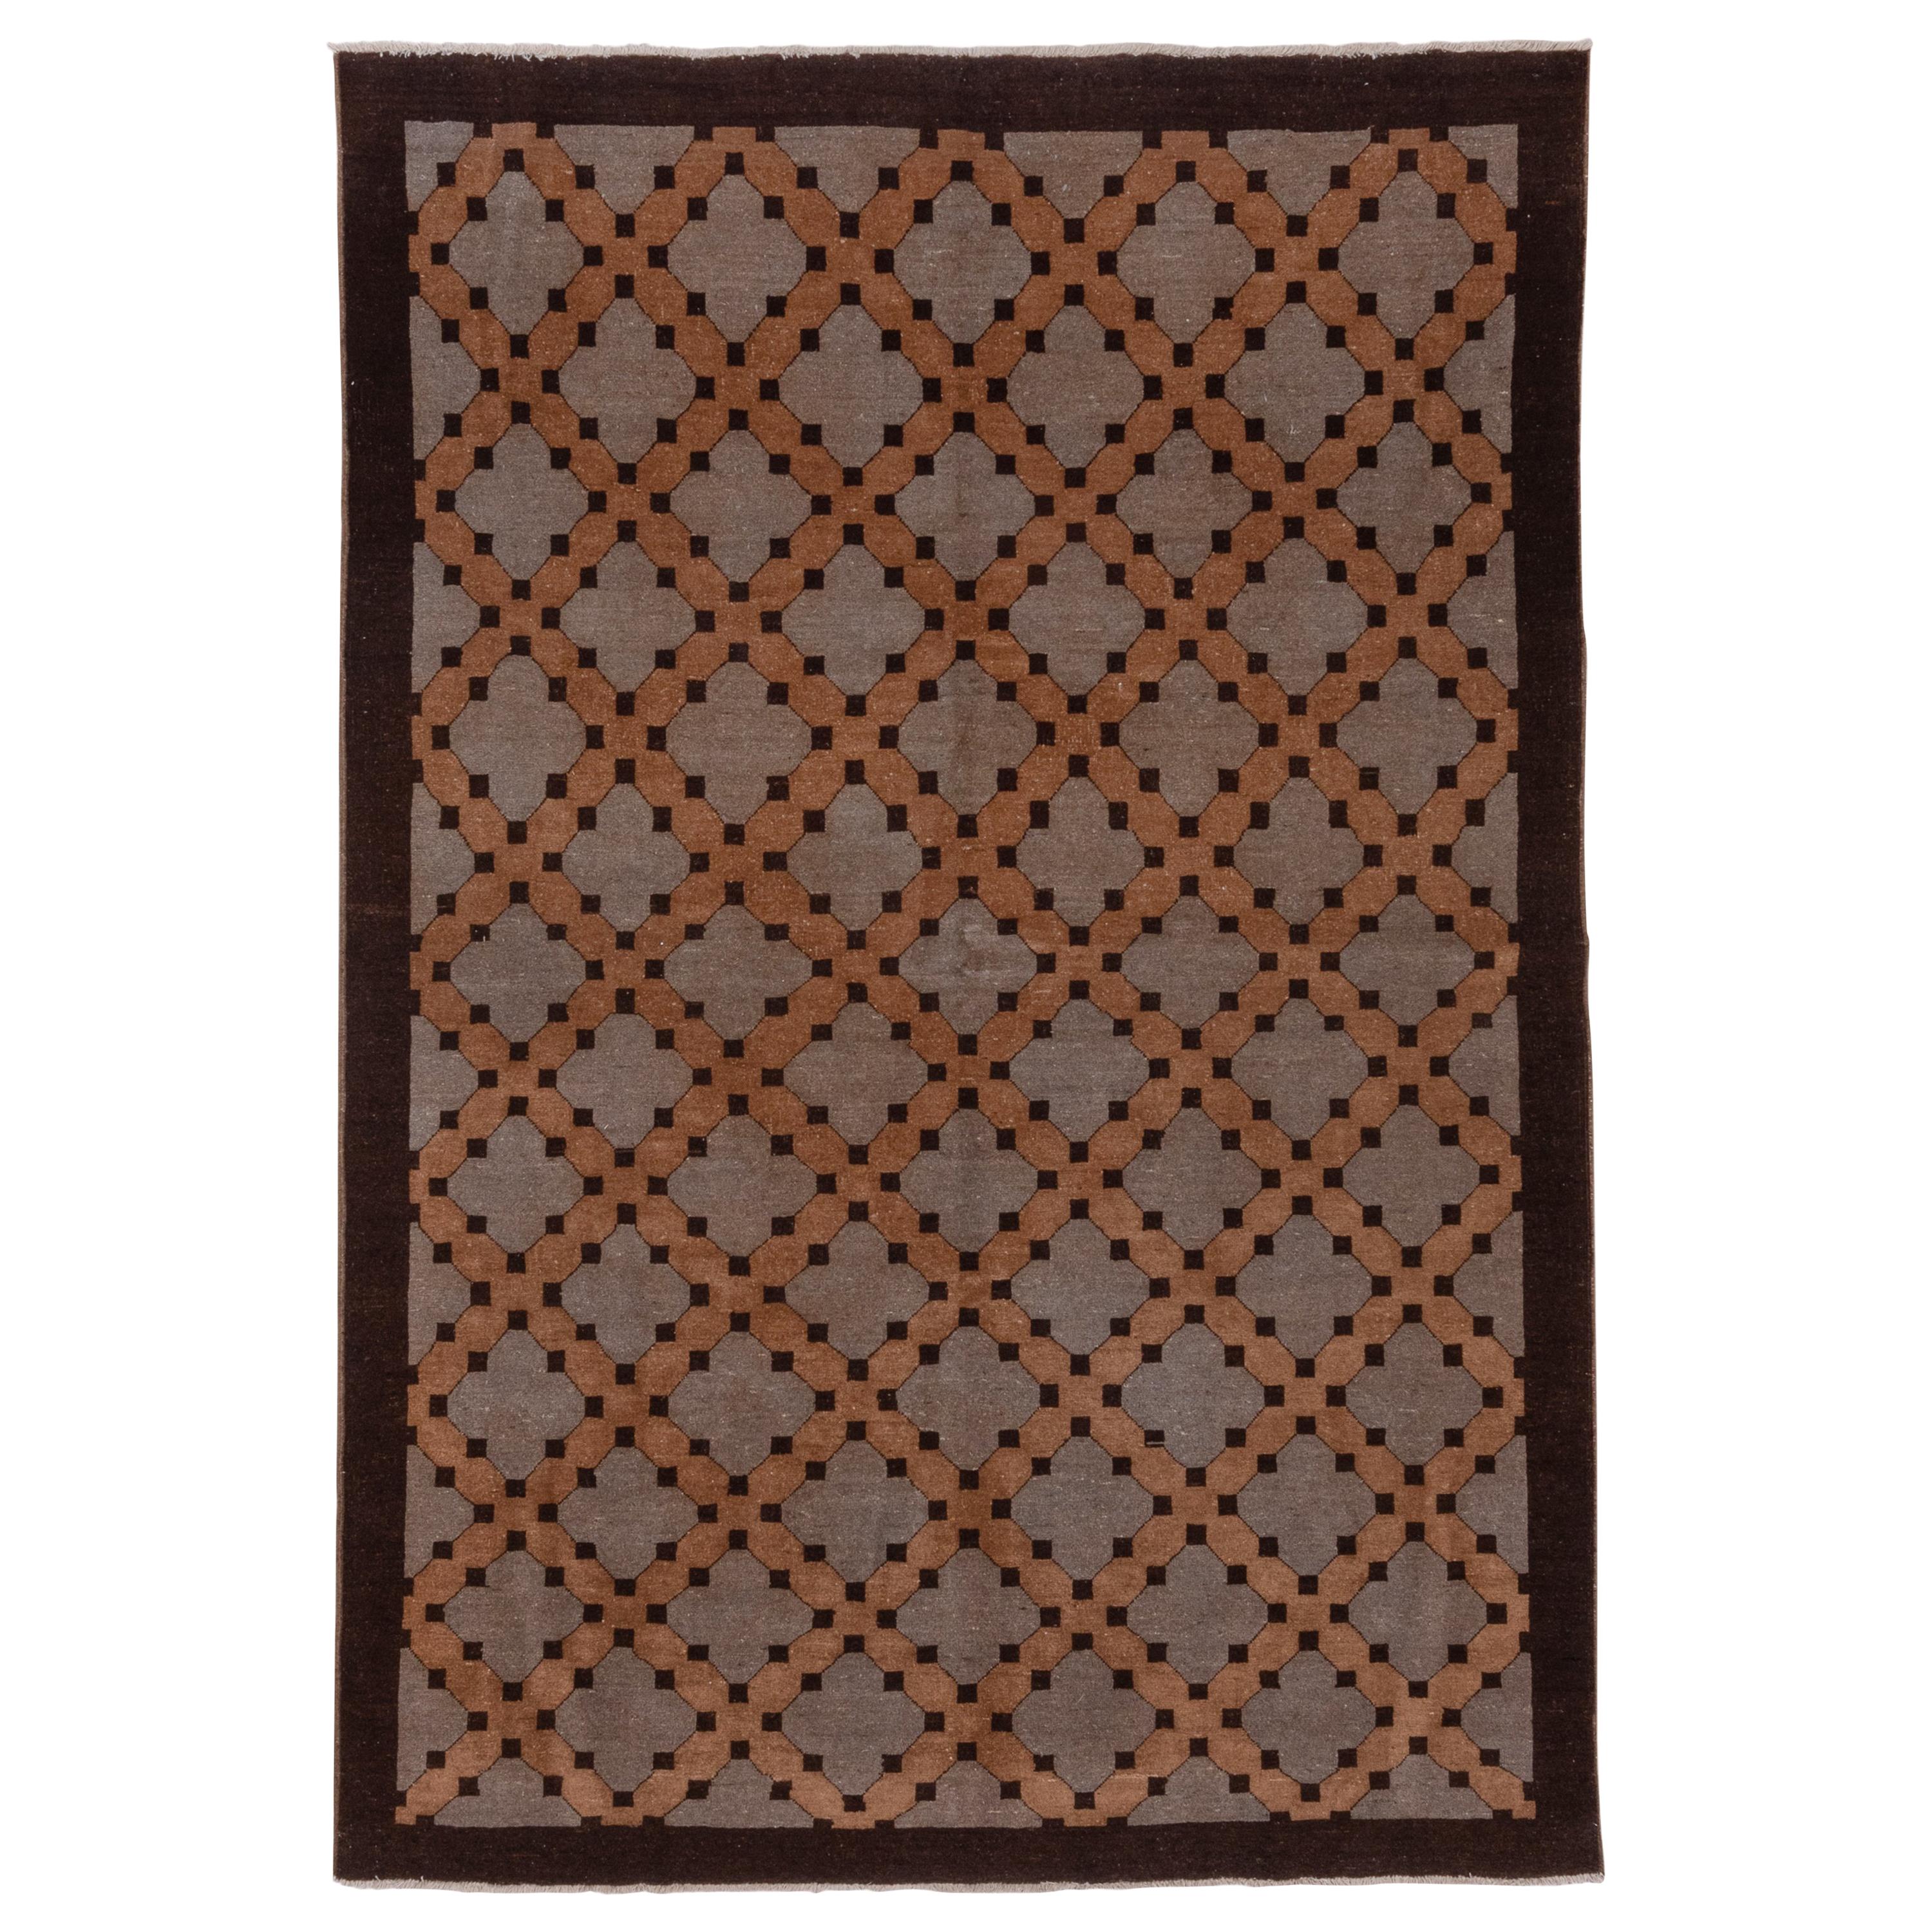 Afghanischer Teppich aus braunem Holz